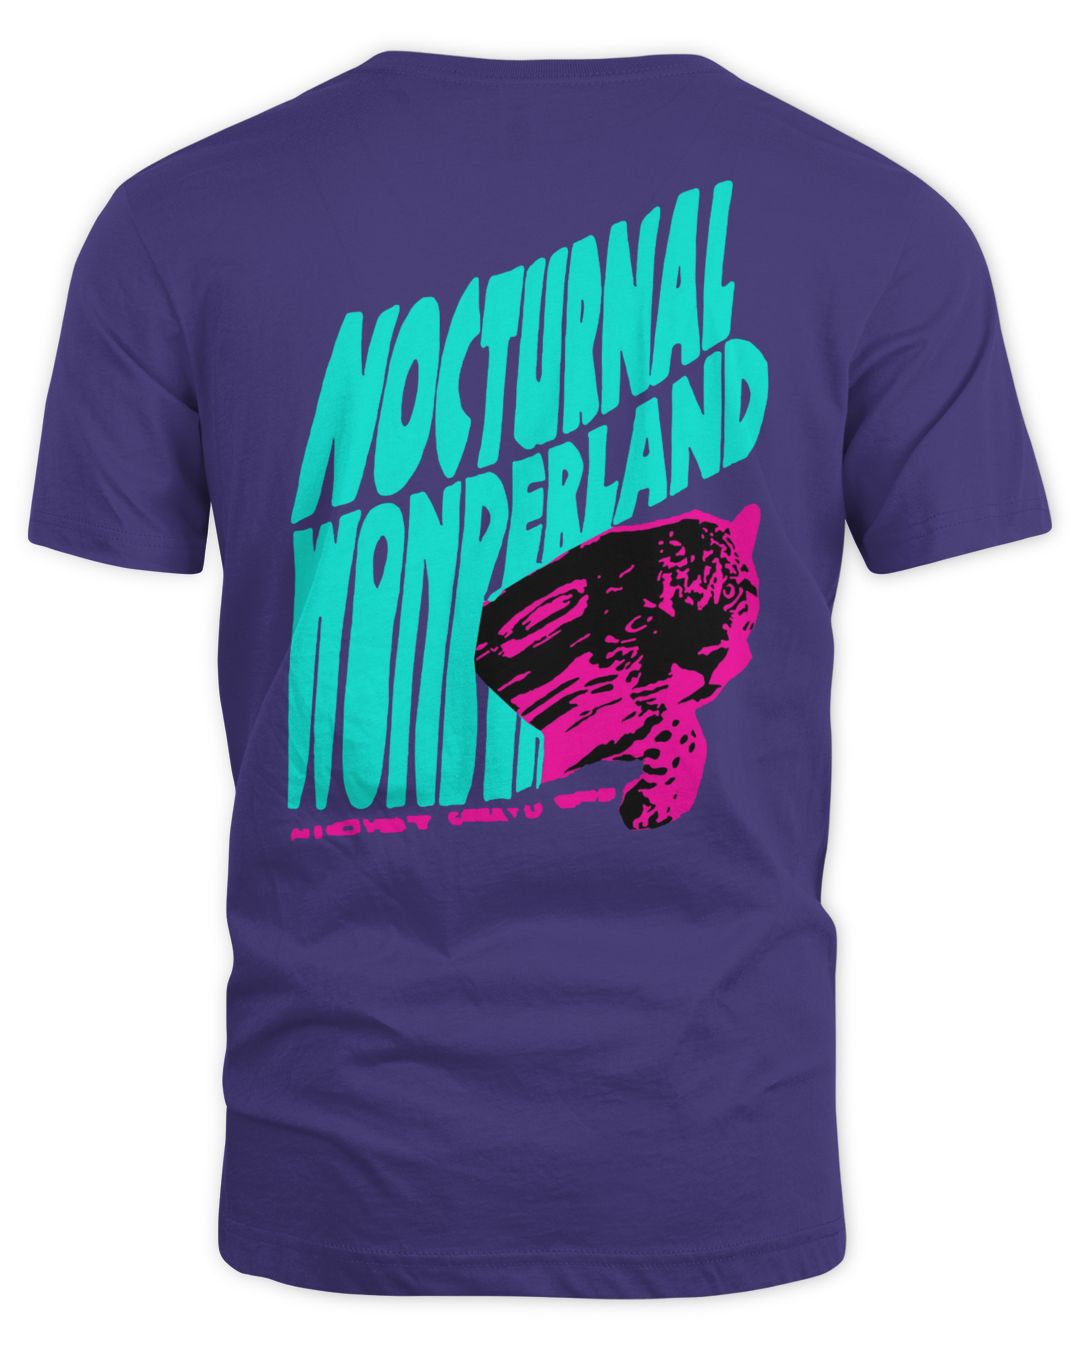 Nocturnal Wonderland Merch Psychedelia Shirt zvh